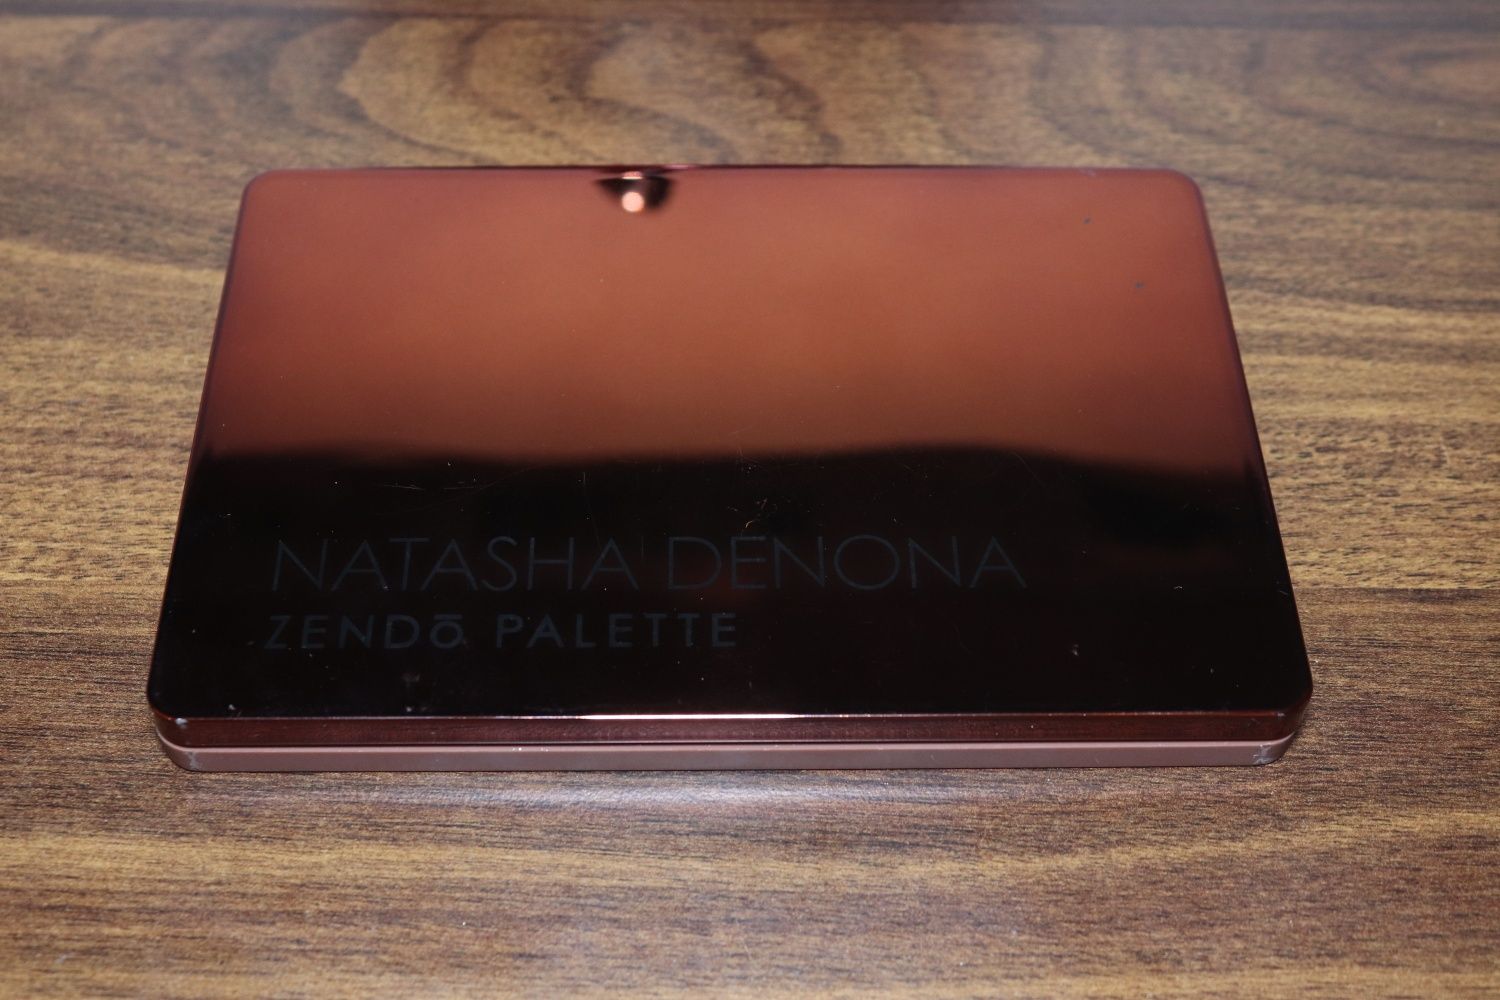 Natasha Denona Zendo palette